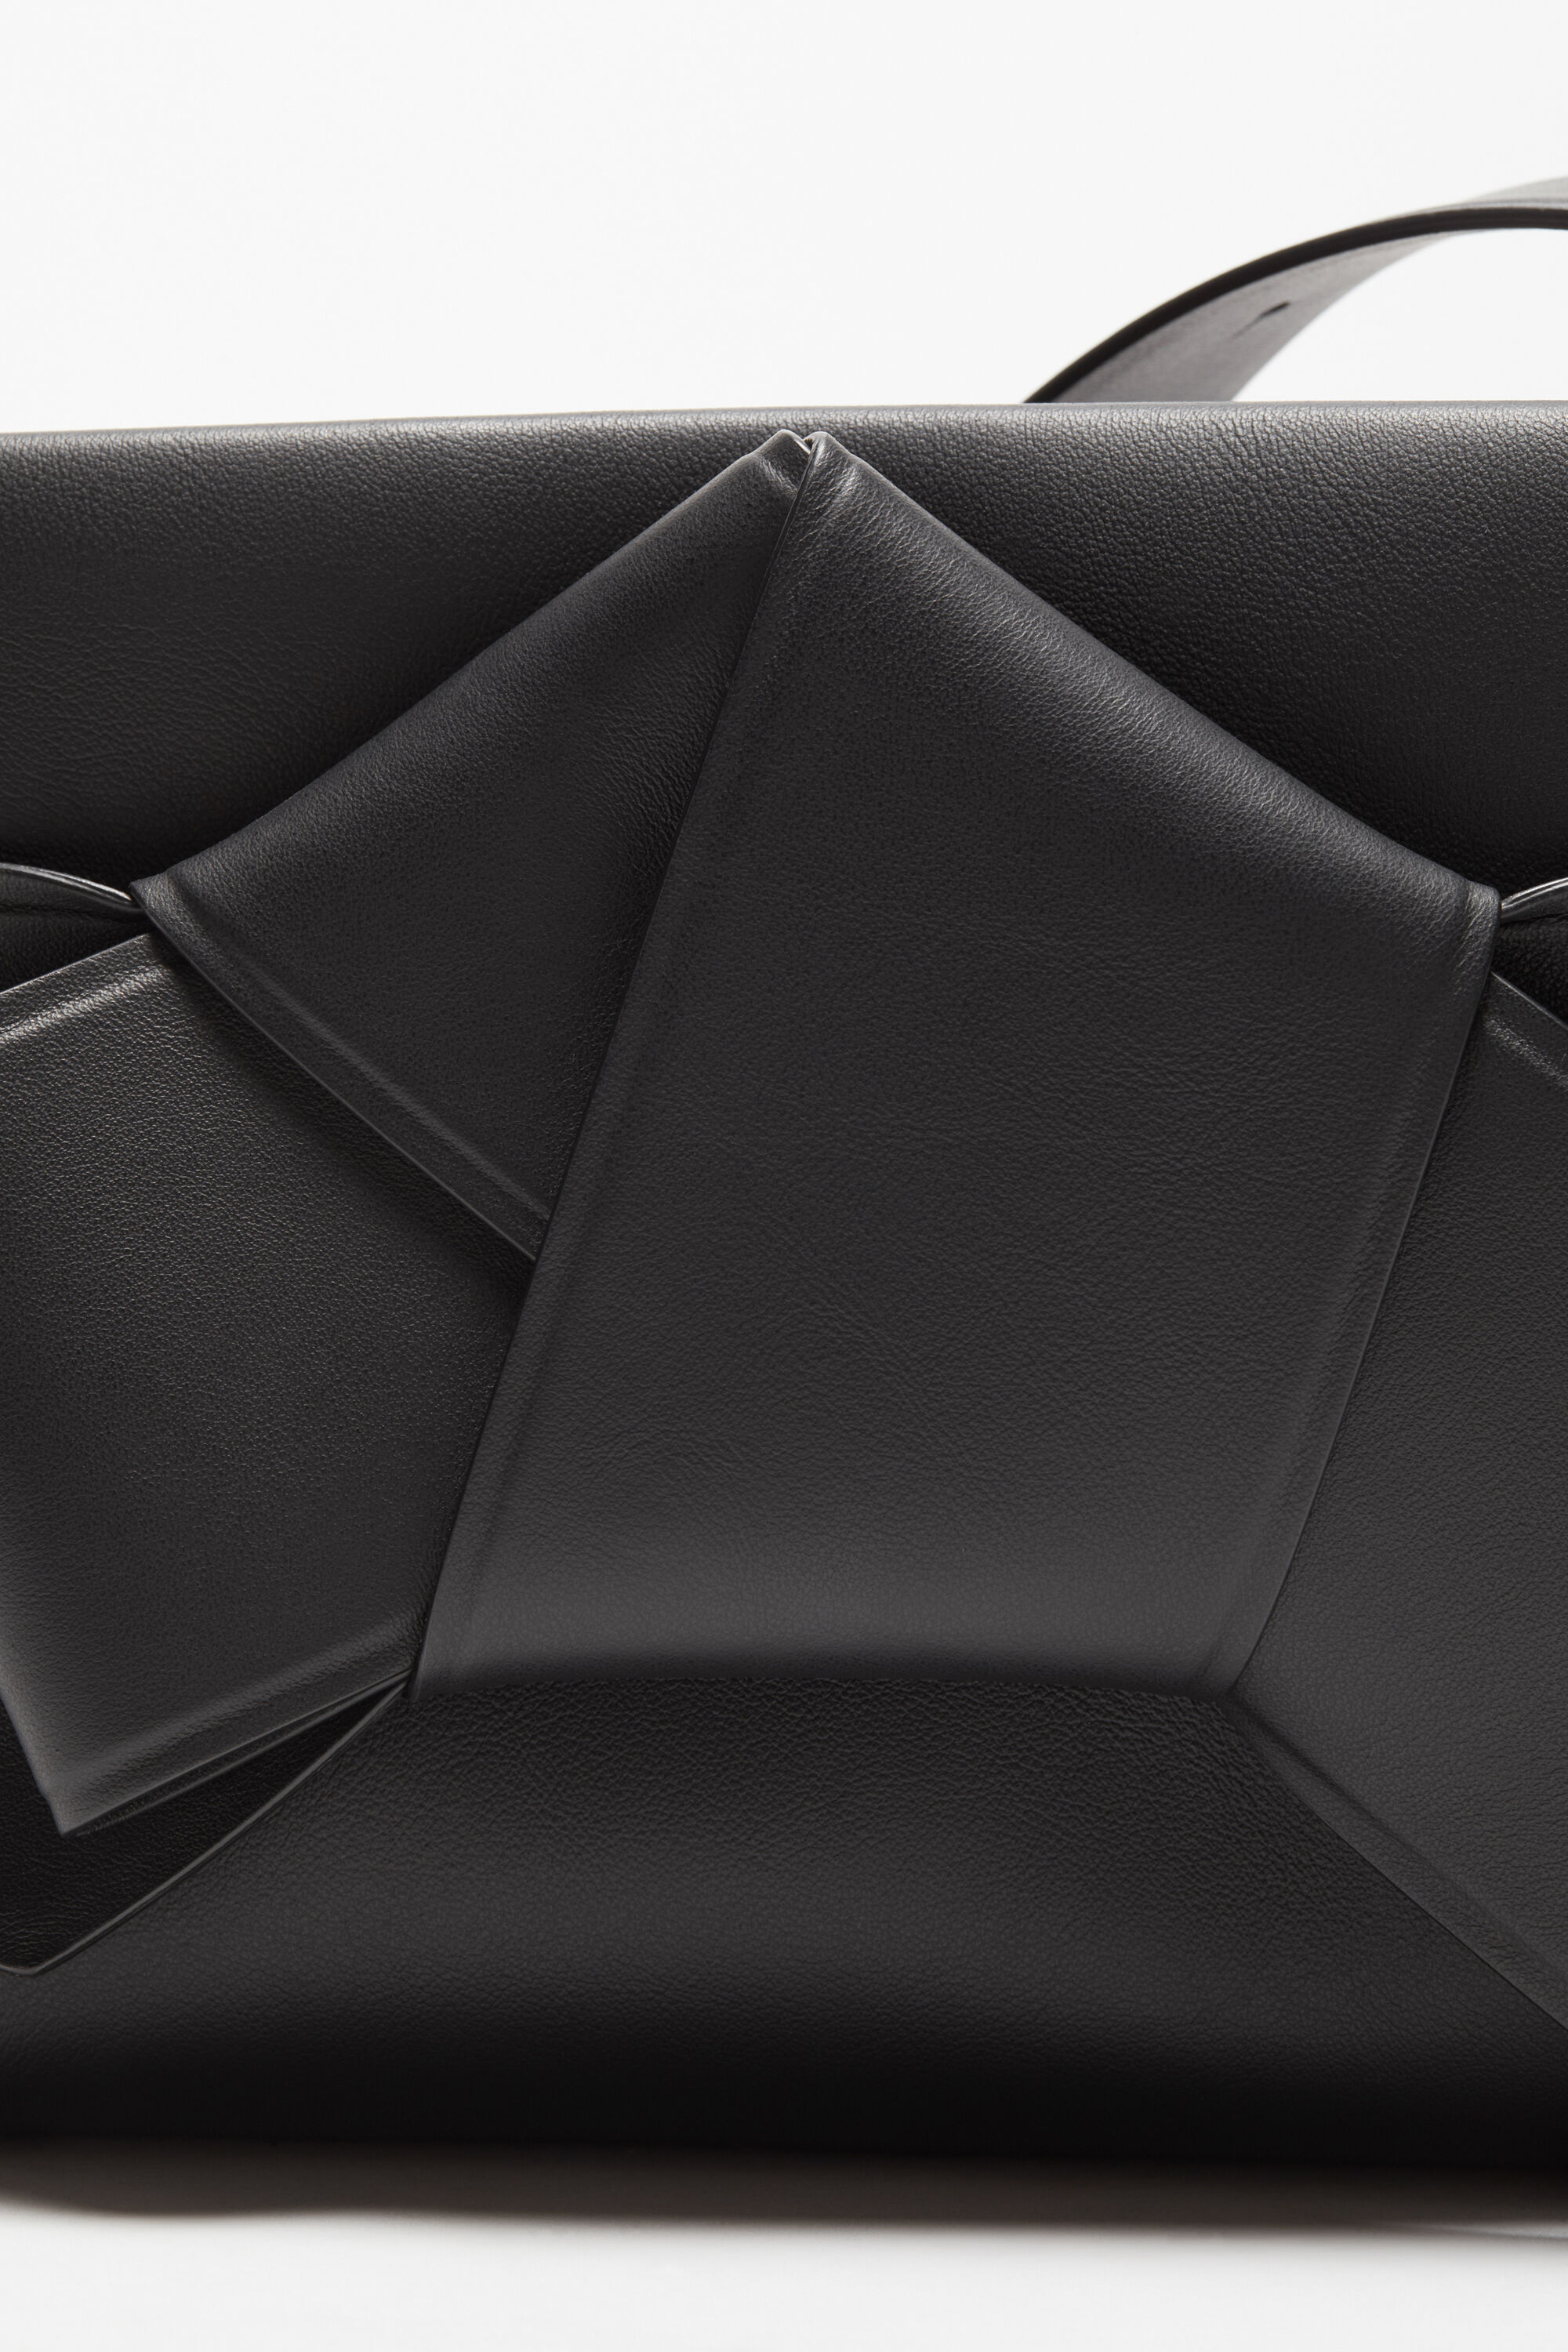 Acne Studios knotted shoulder bag - Black